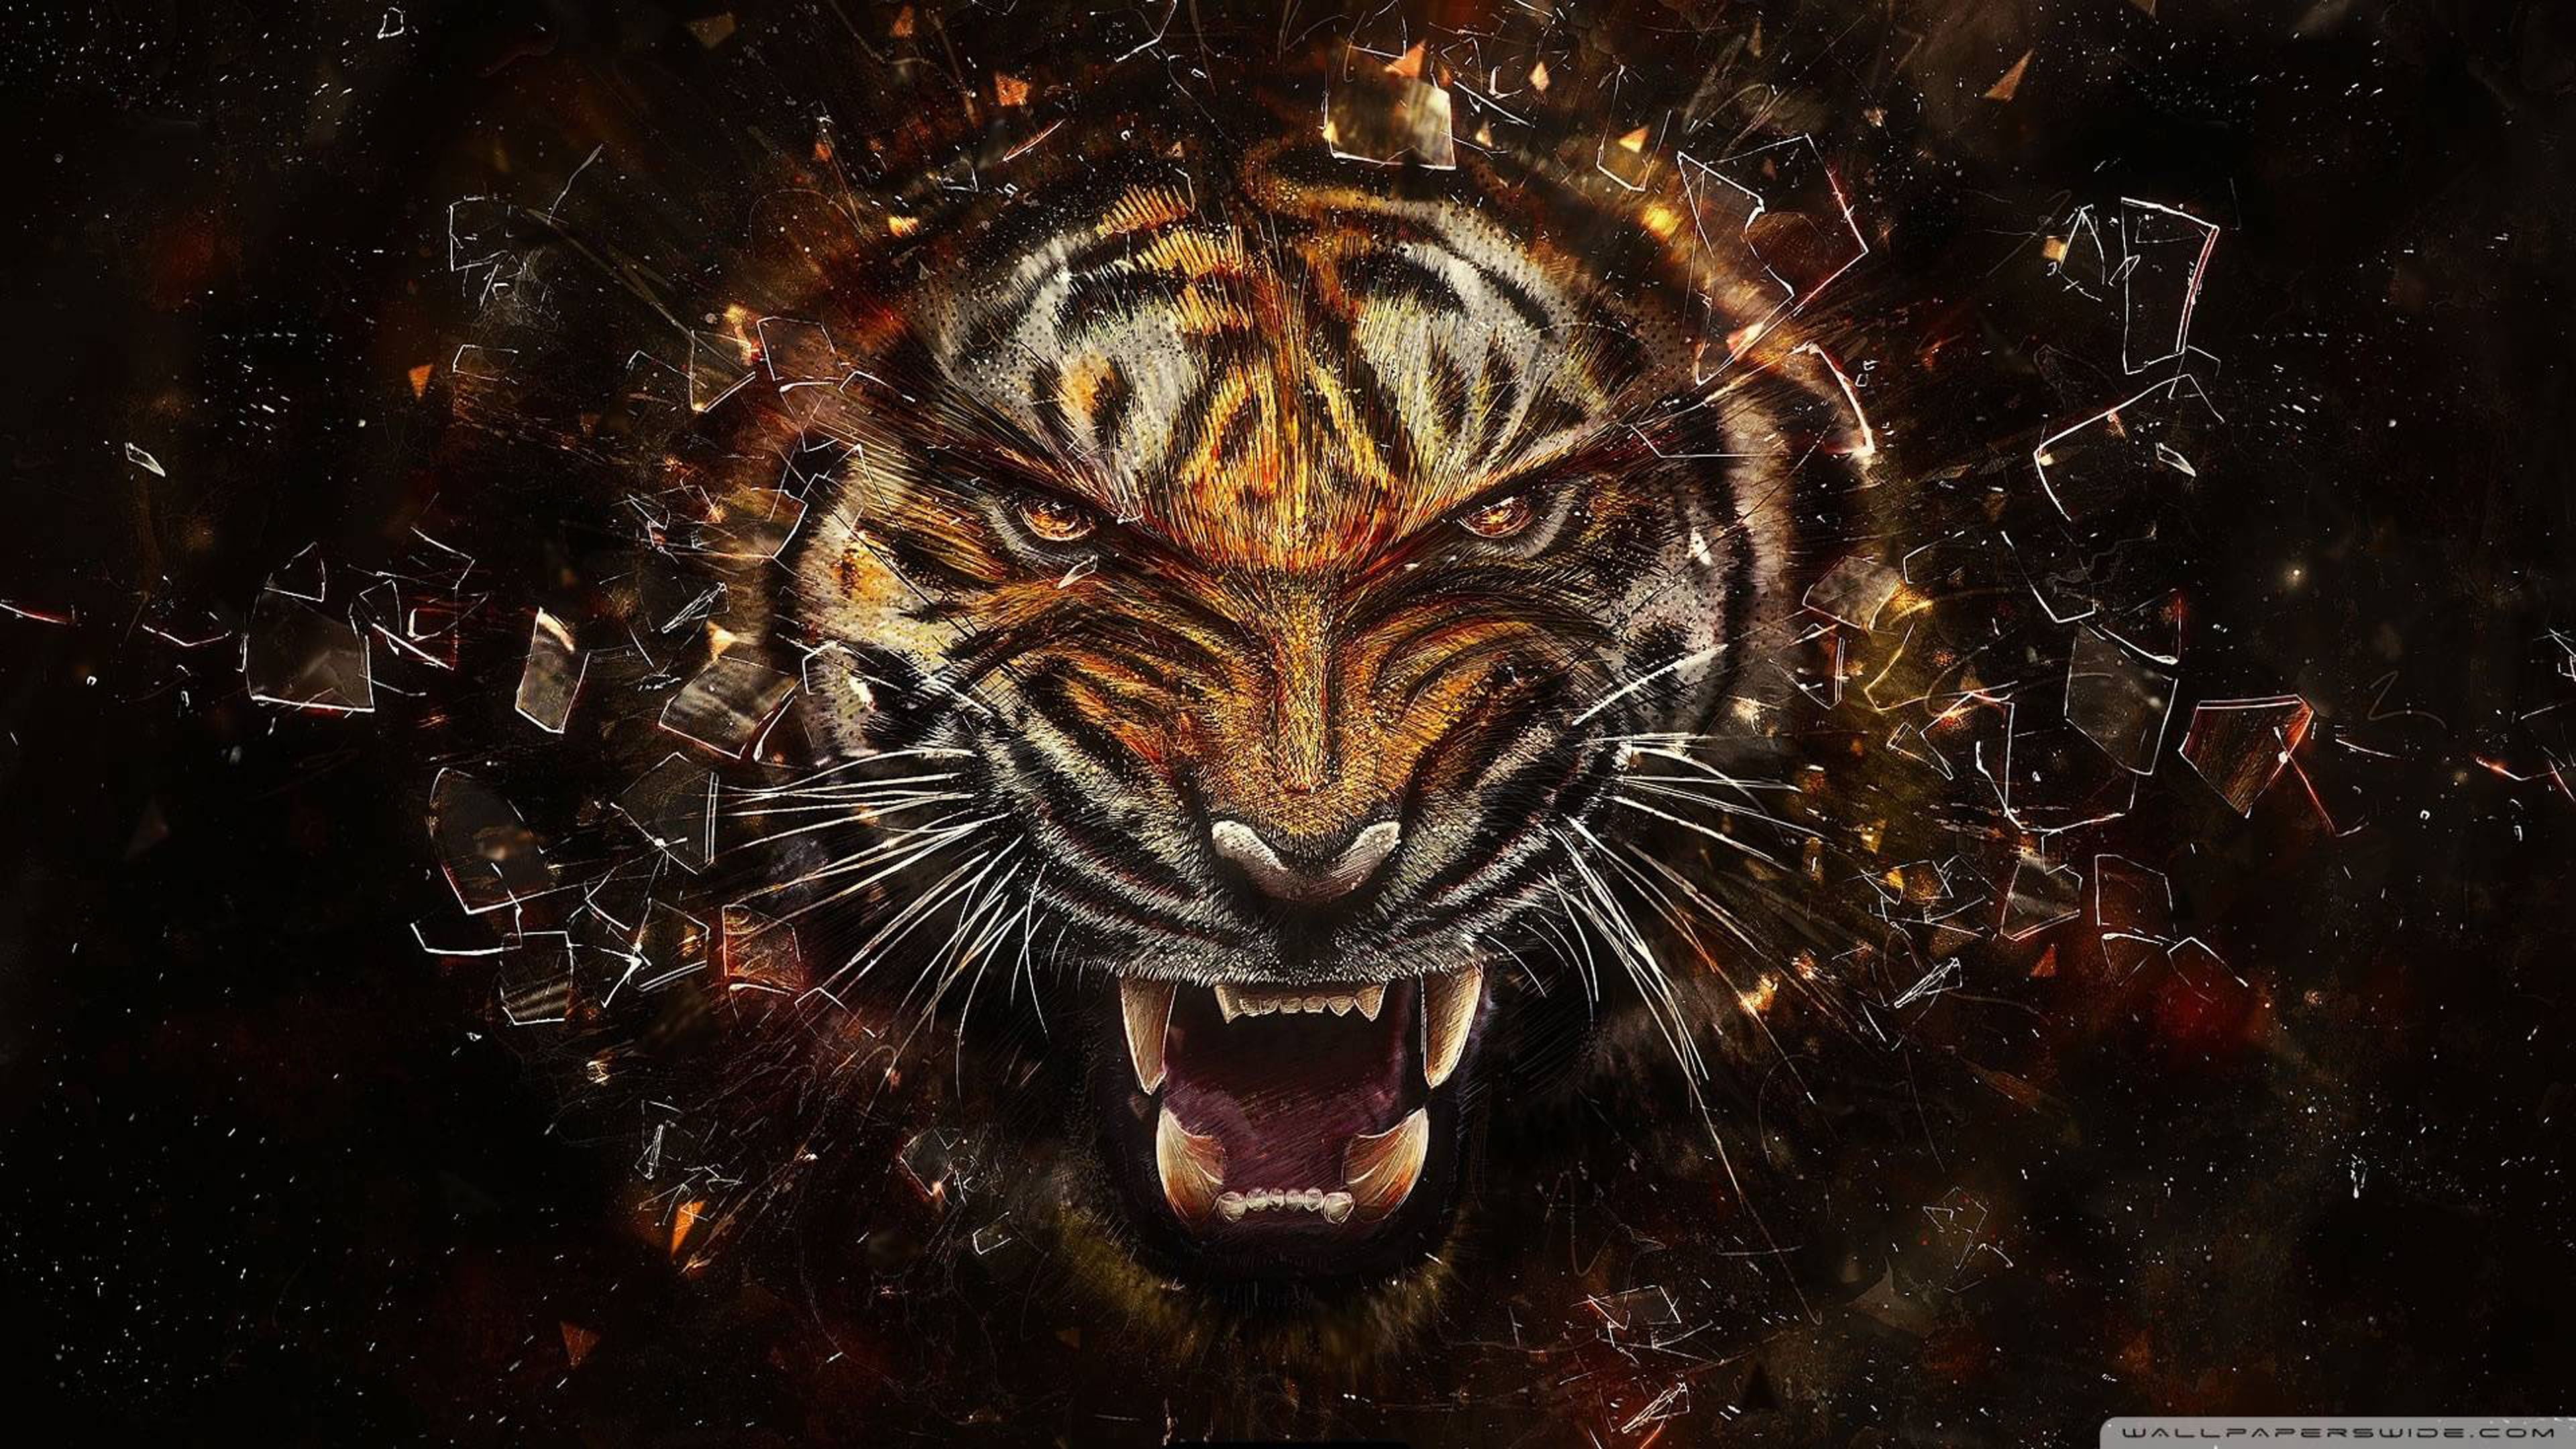 Roaring Tiger Ultra HD 4k Wallpaper Abstract Artwork